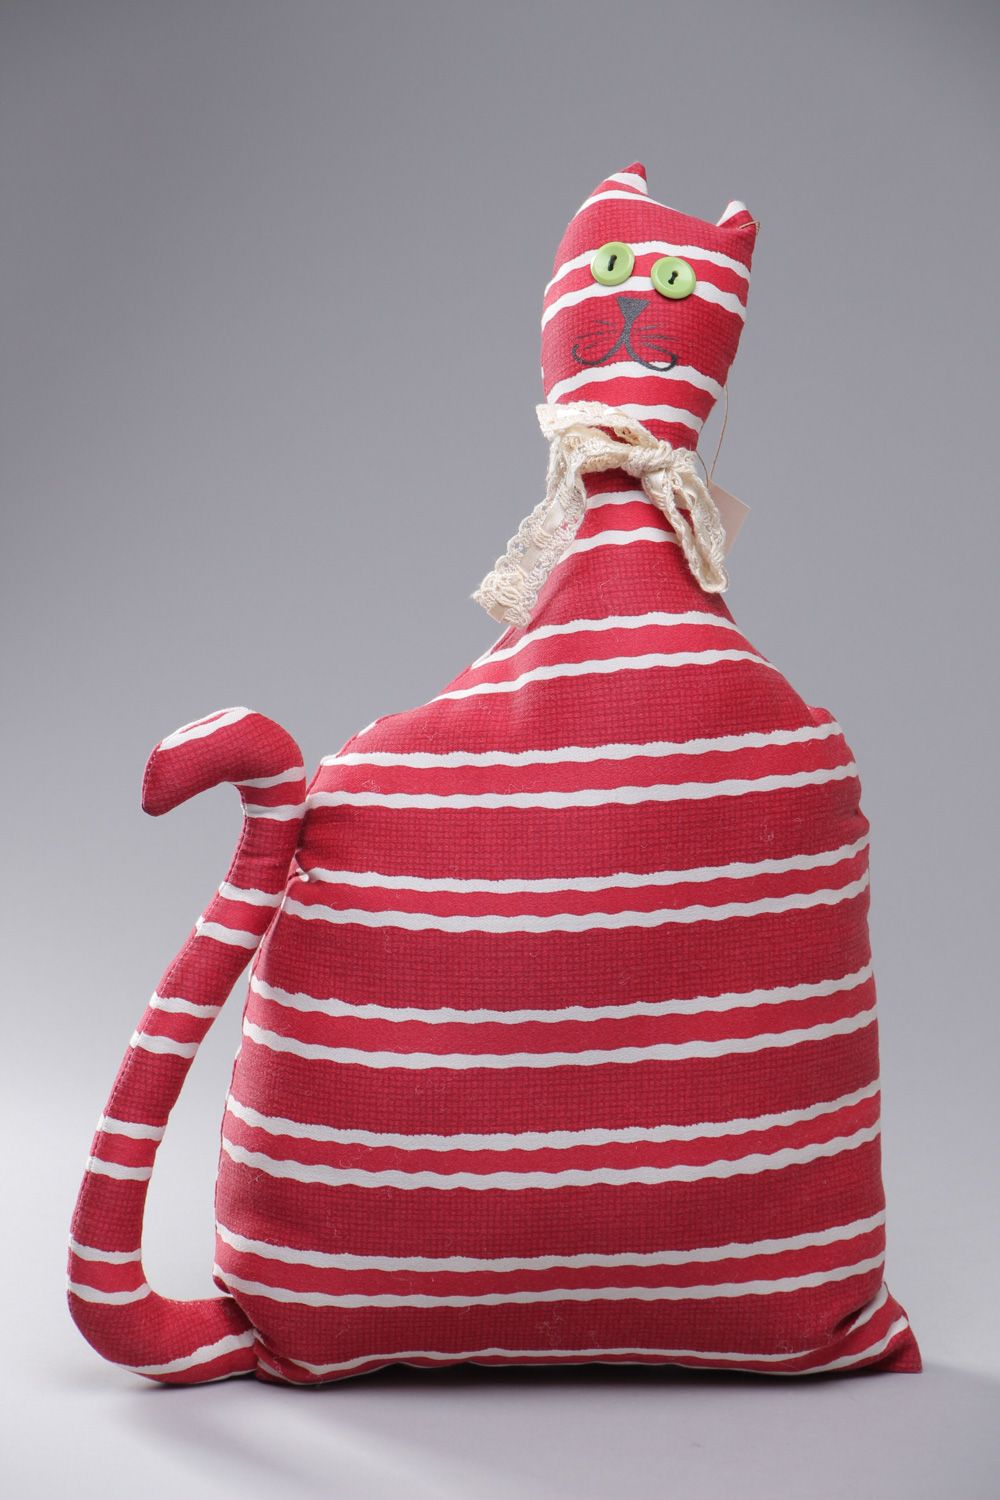 Интерьерная игрушка-подушка из хлопковой ткани в виде красного полосатого кота фото 1